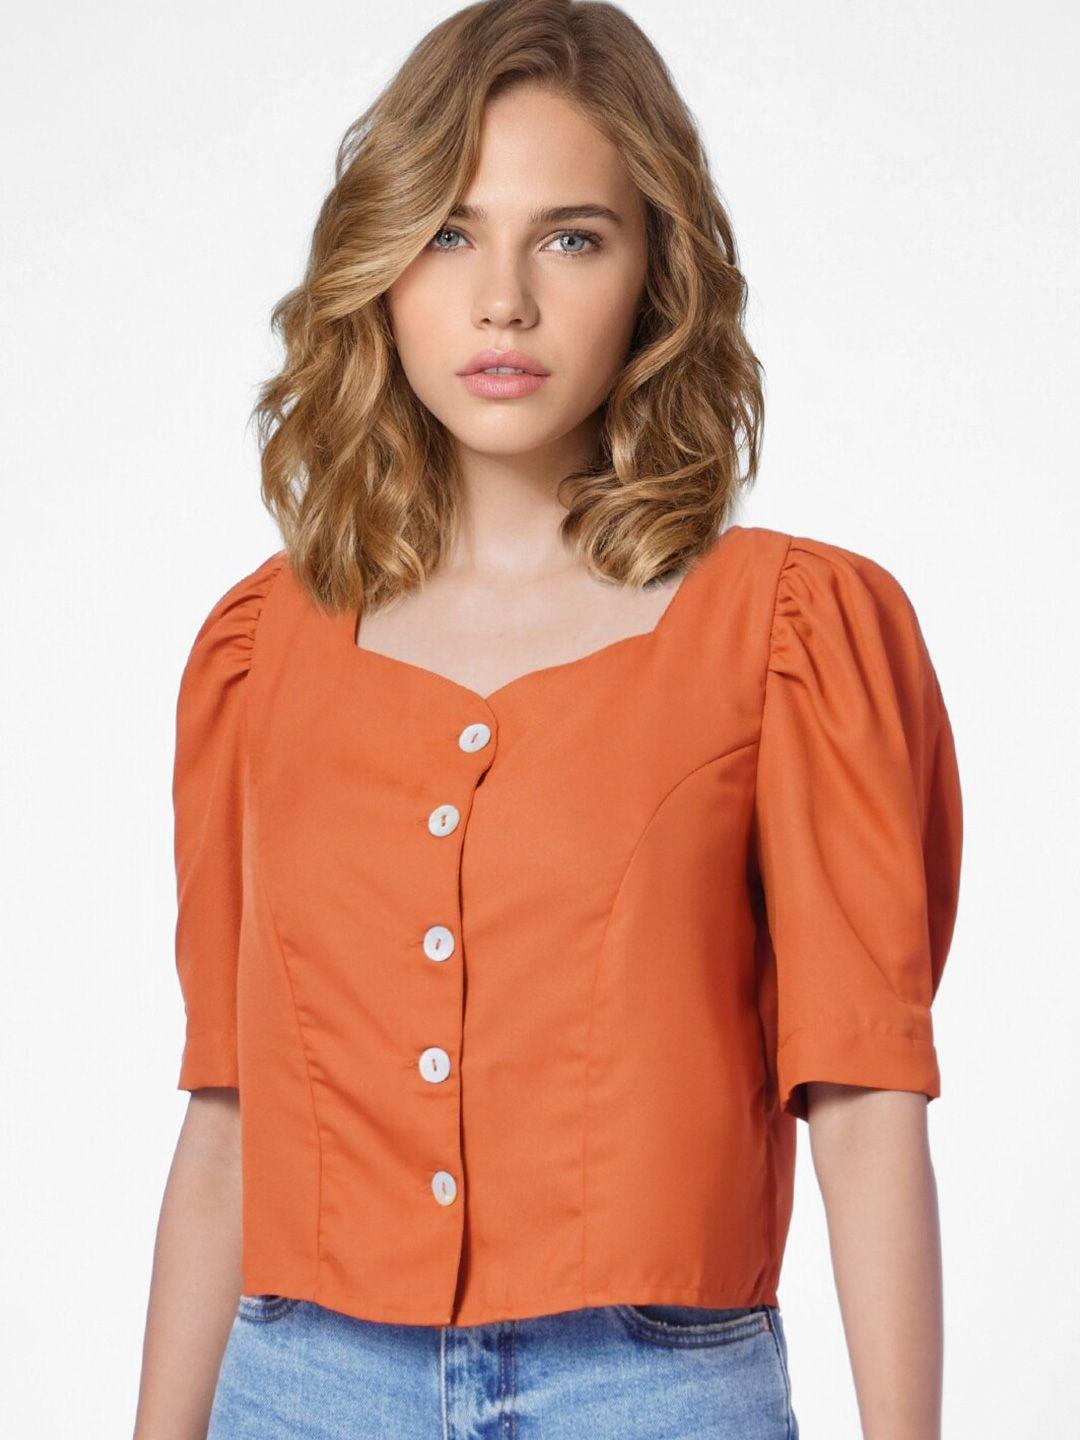 only orange v-neck short sleeves top